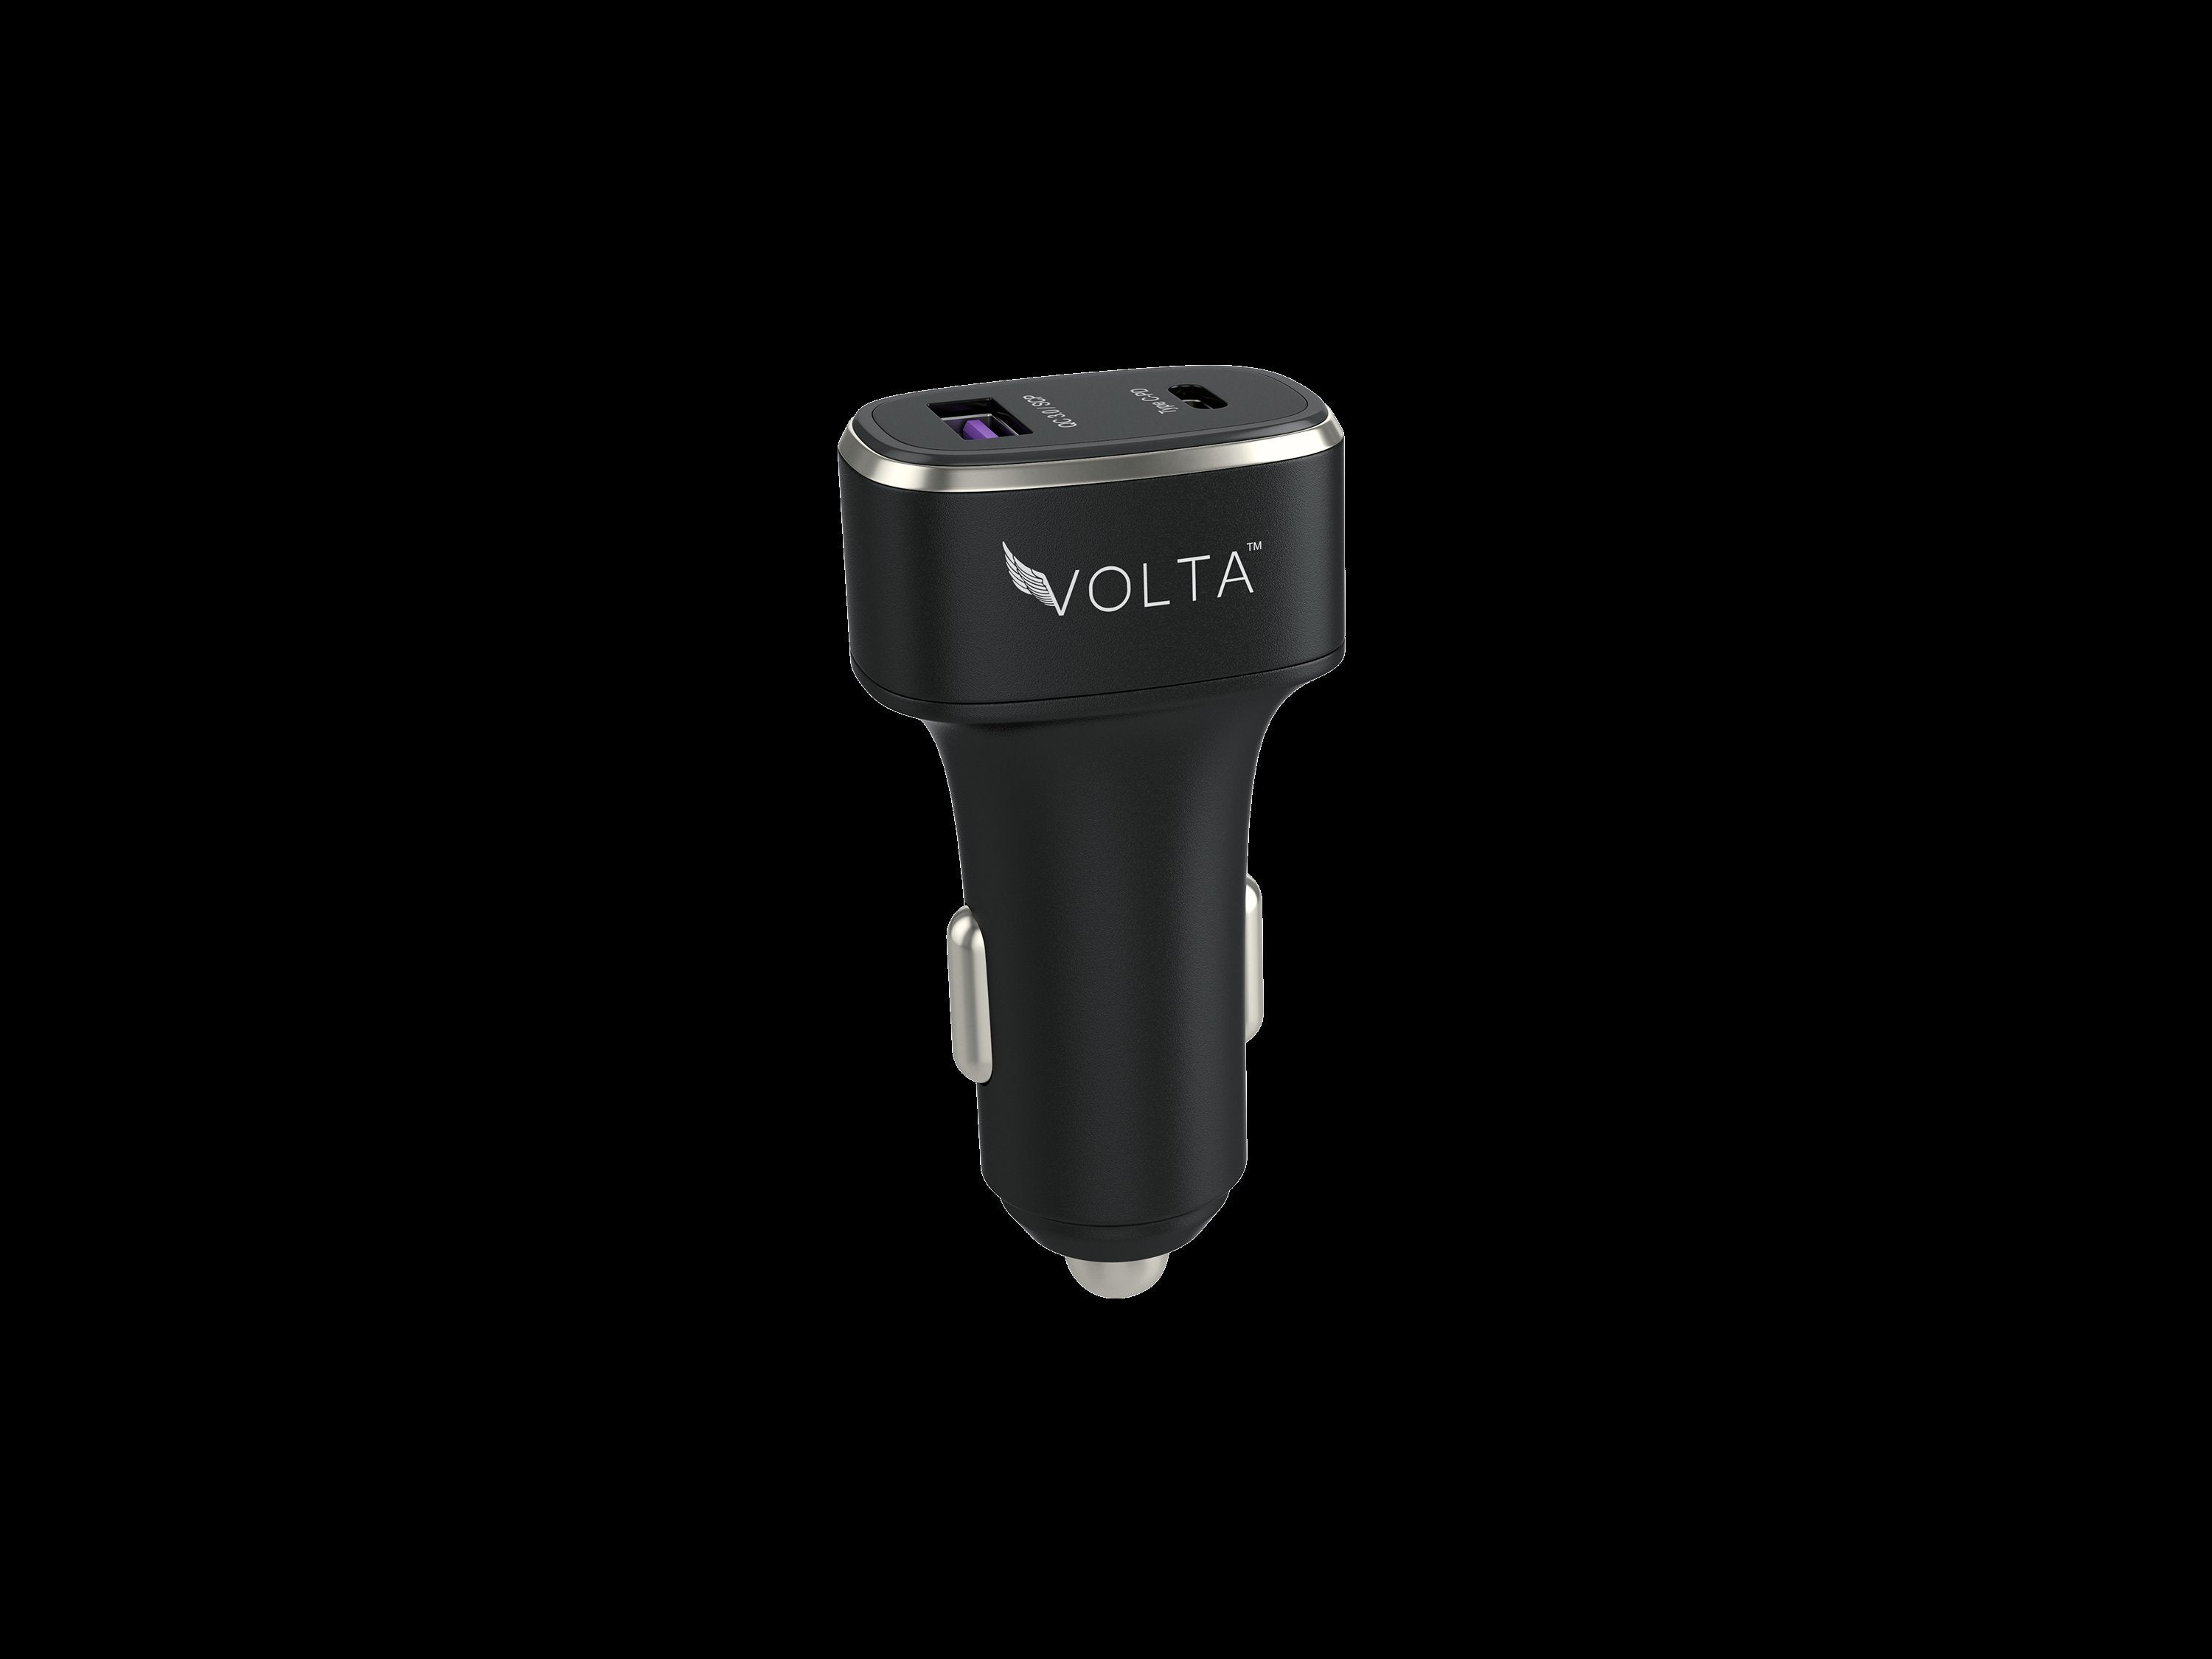 Volta Power Adapters